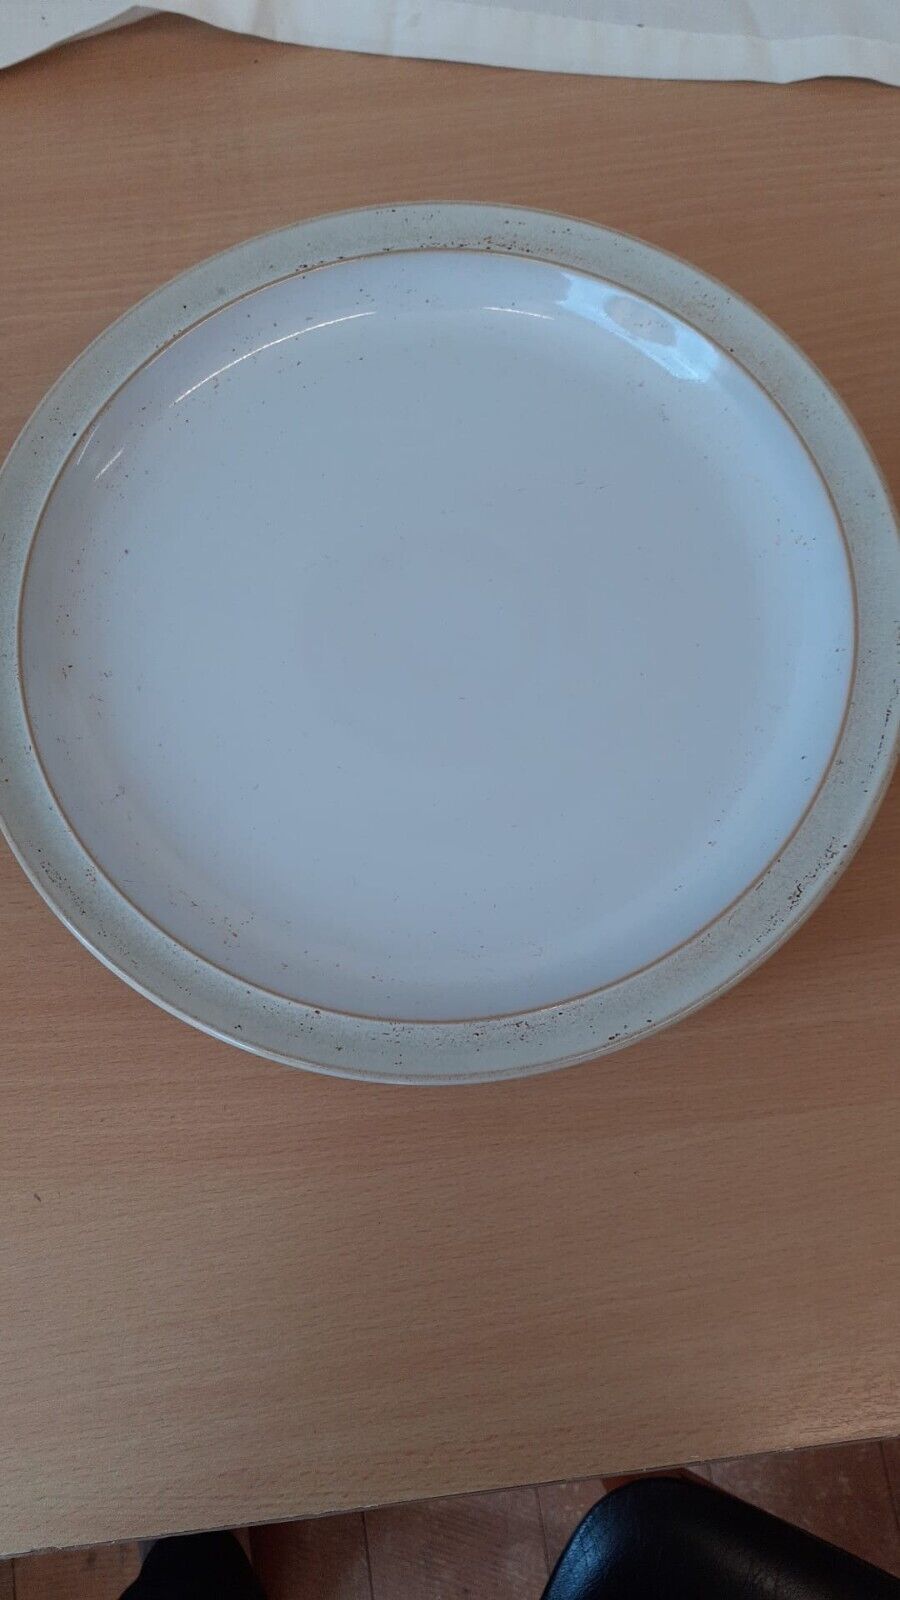 Denby White/Beige Mottled Dinner Plates Set x6 - No Chips/Cracks Bundle